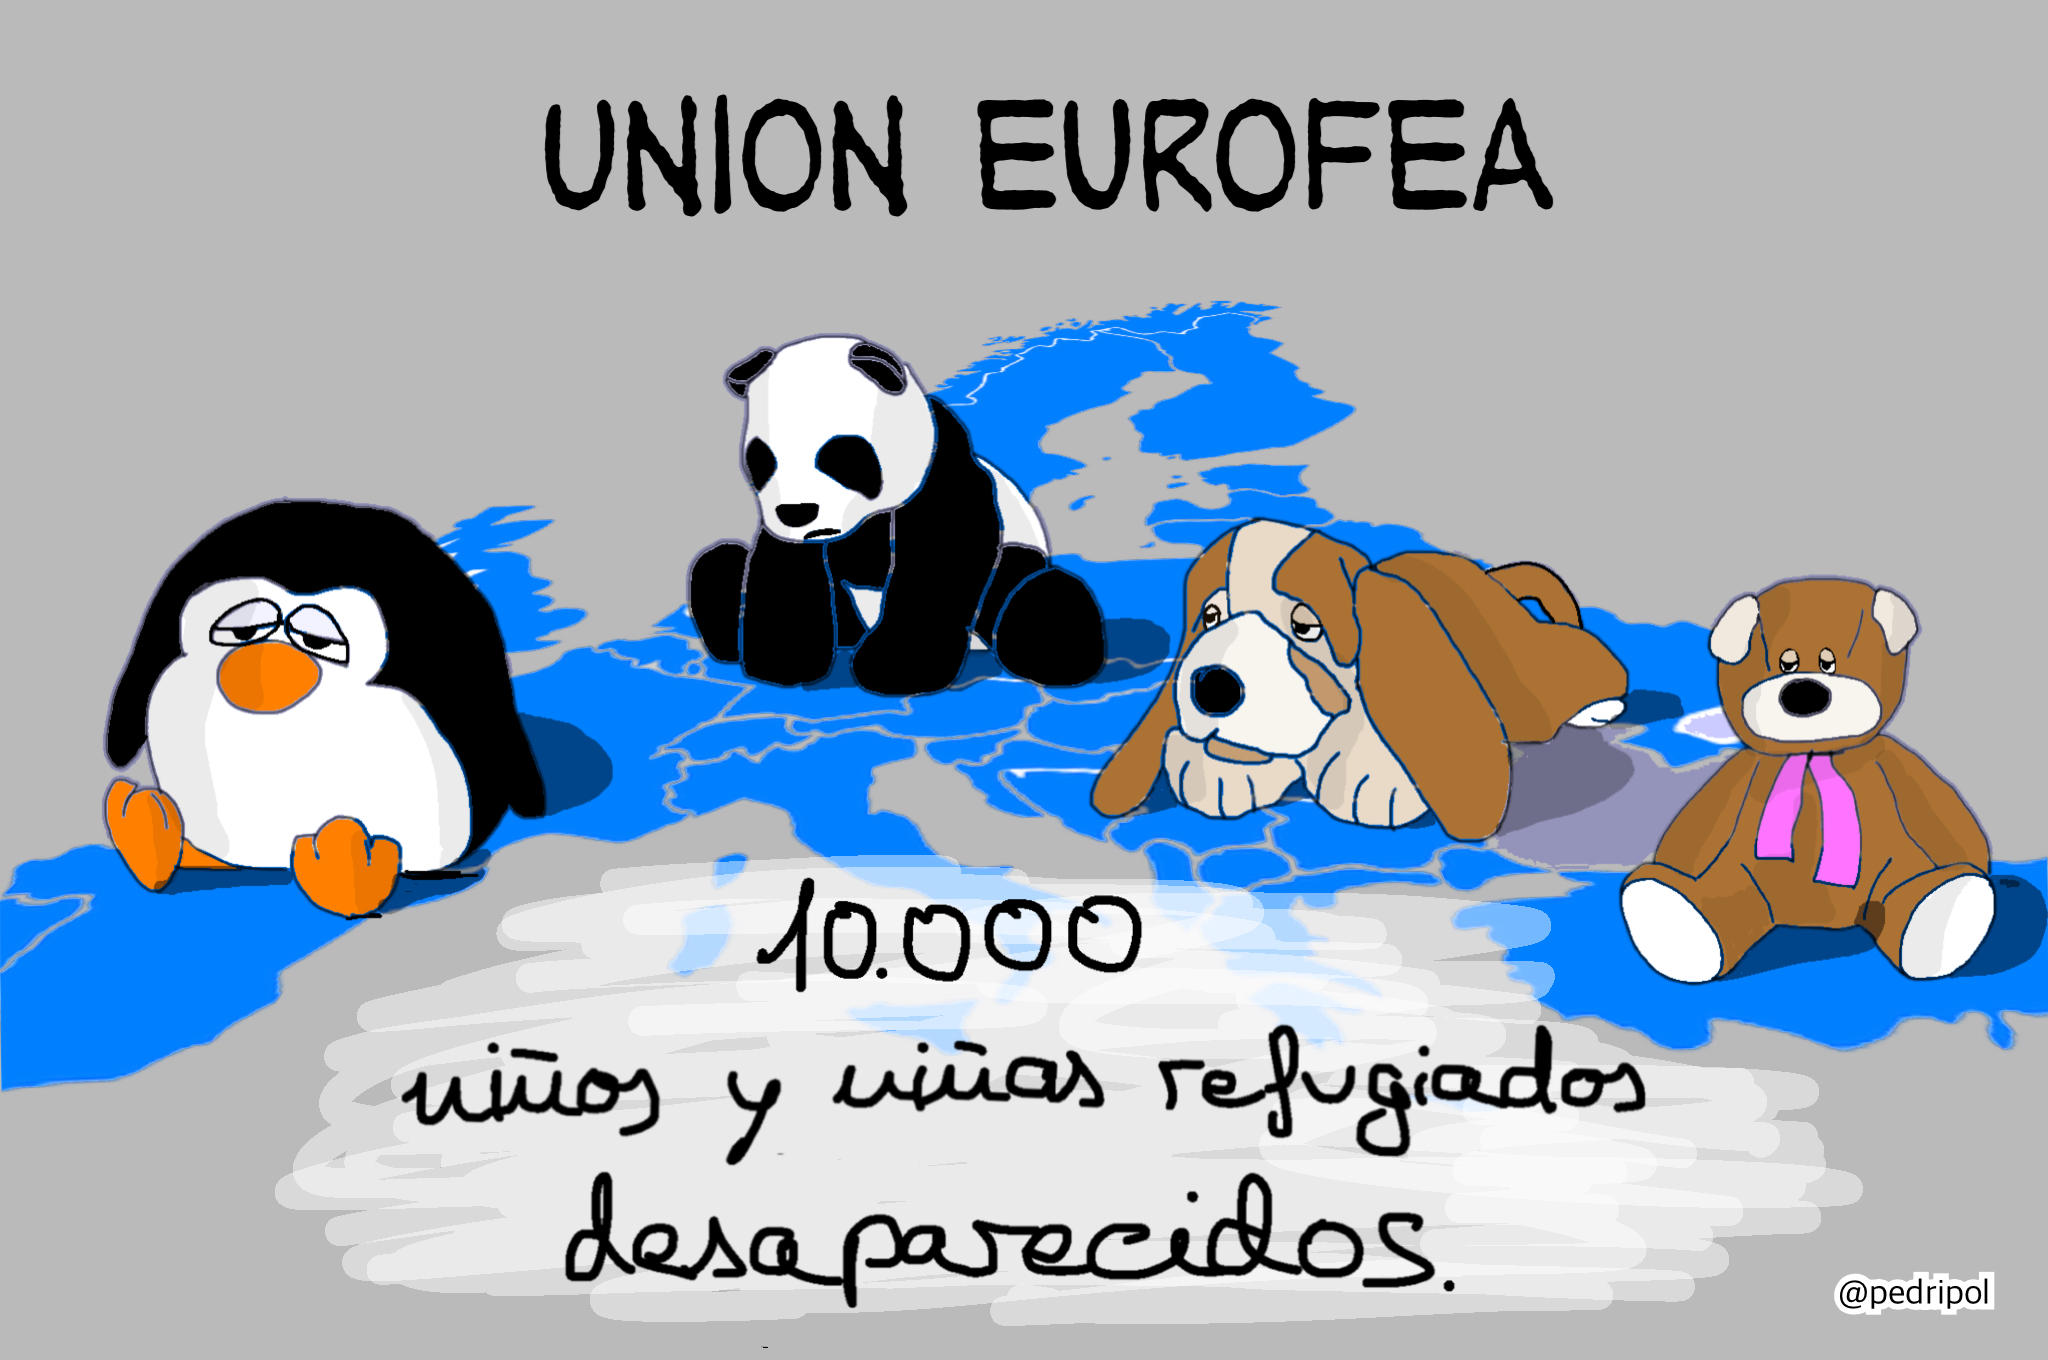 U. Eurofea